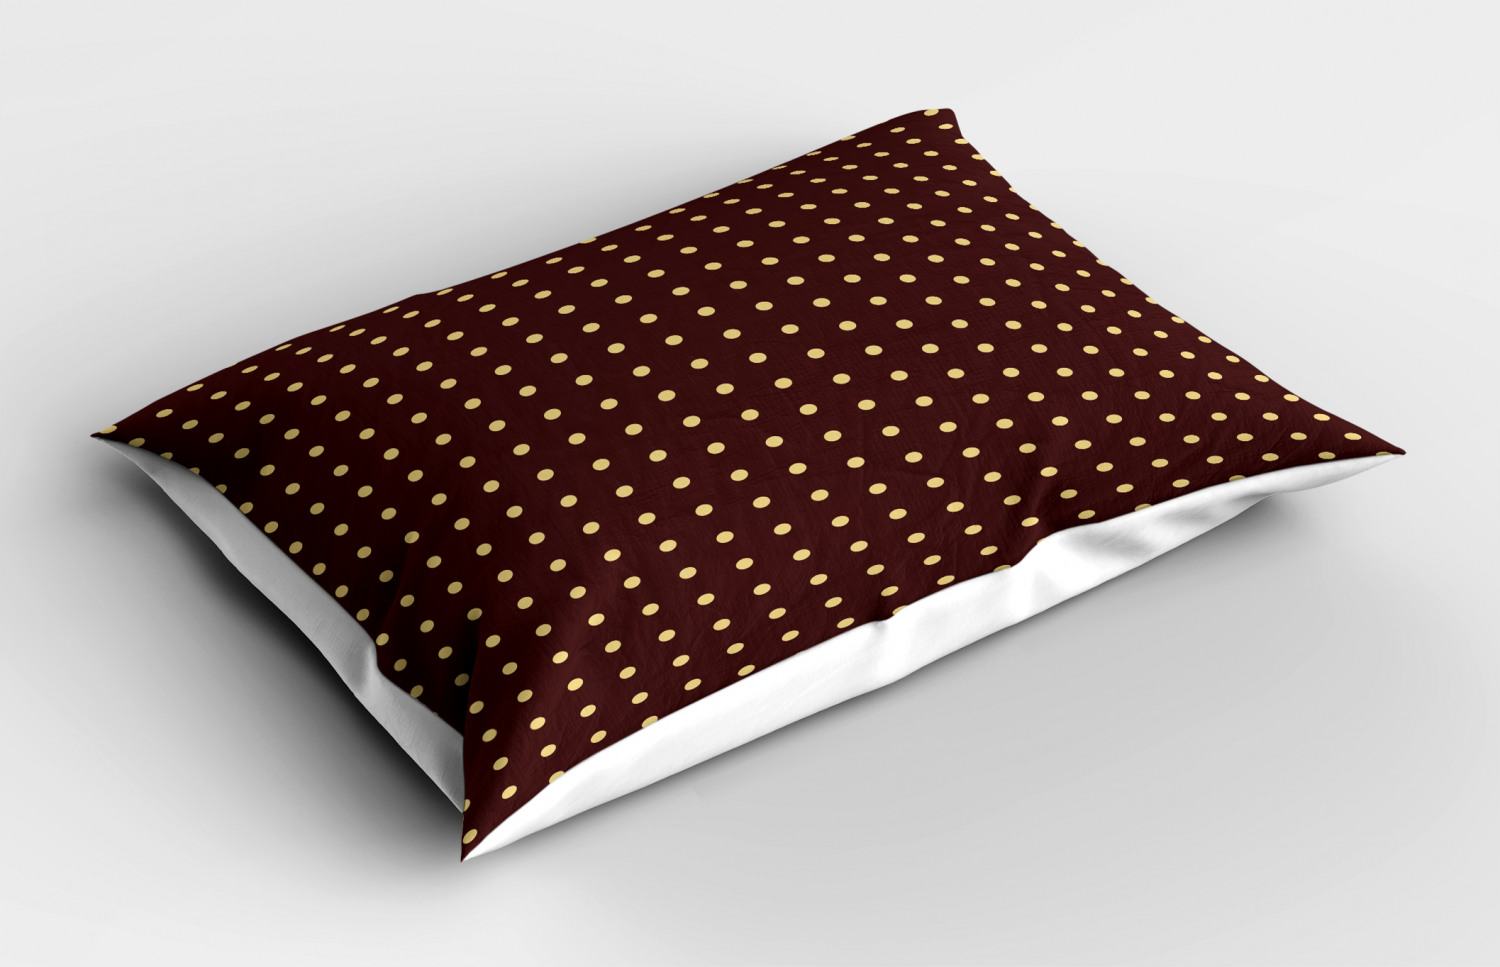 Details about   Lively Vintage Pillow Sham Decorative Pillowcase 3 Sizes Bedroom Decoration 